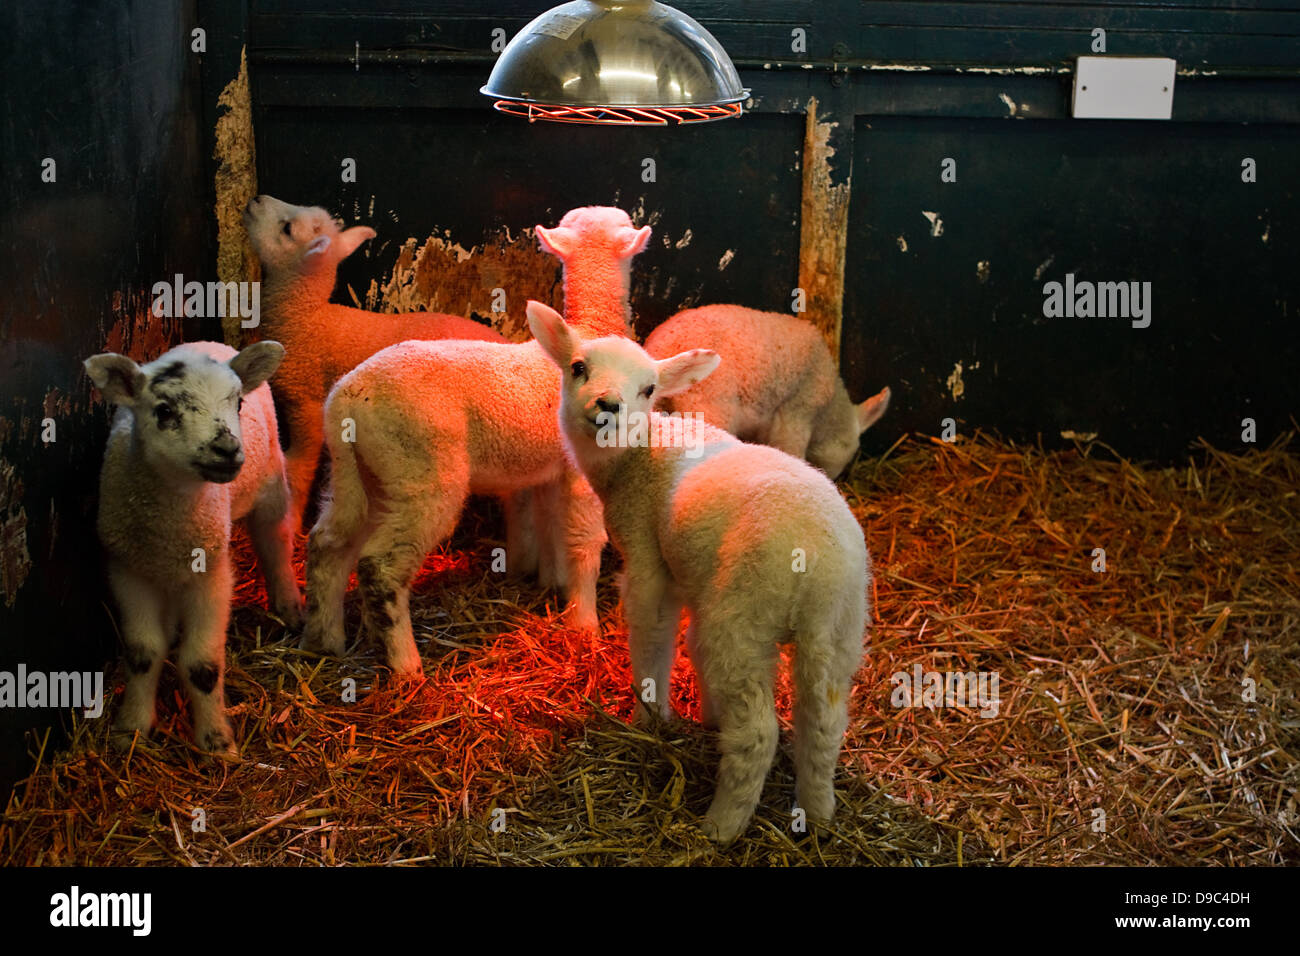 Les Jeunes agneaux élevés à l'intérieur dans un petit enclos par un agriculteur sous une lampe de la chaleur pour les garder au chaud Banque D'Images